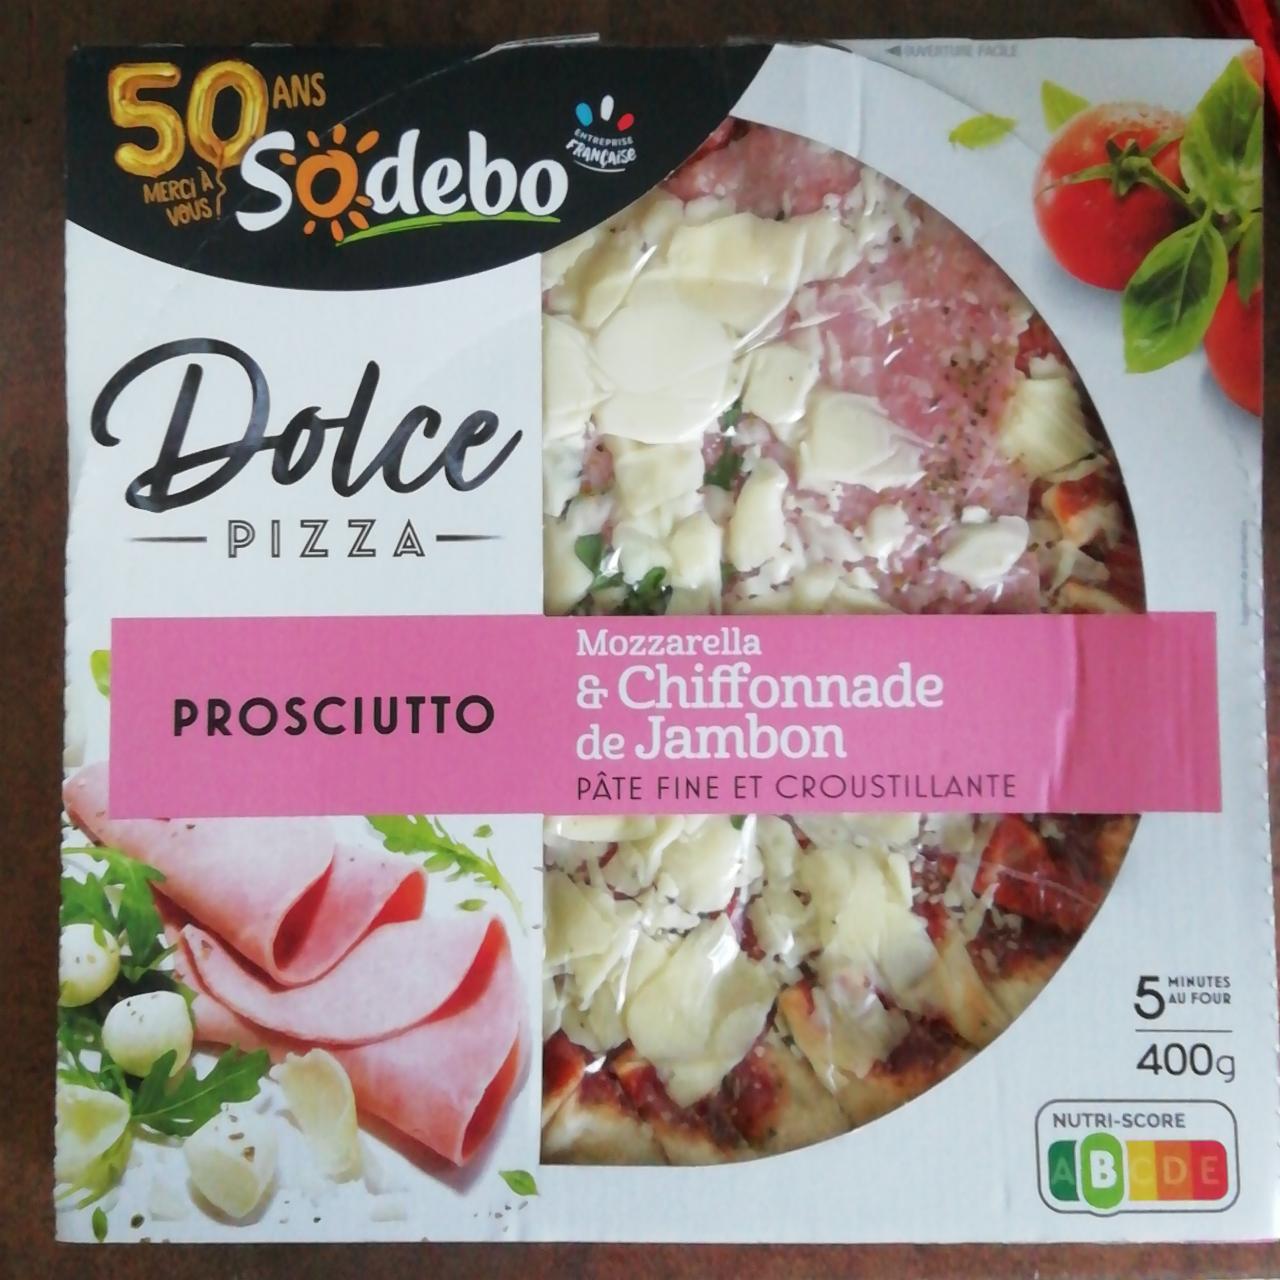 Fotografie - Dolce Pizza Prosciutto Mozzarella & Chiffonnade de Jambon Sodebo